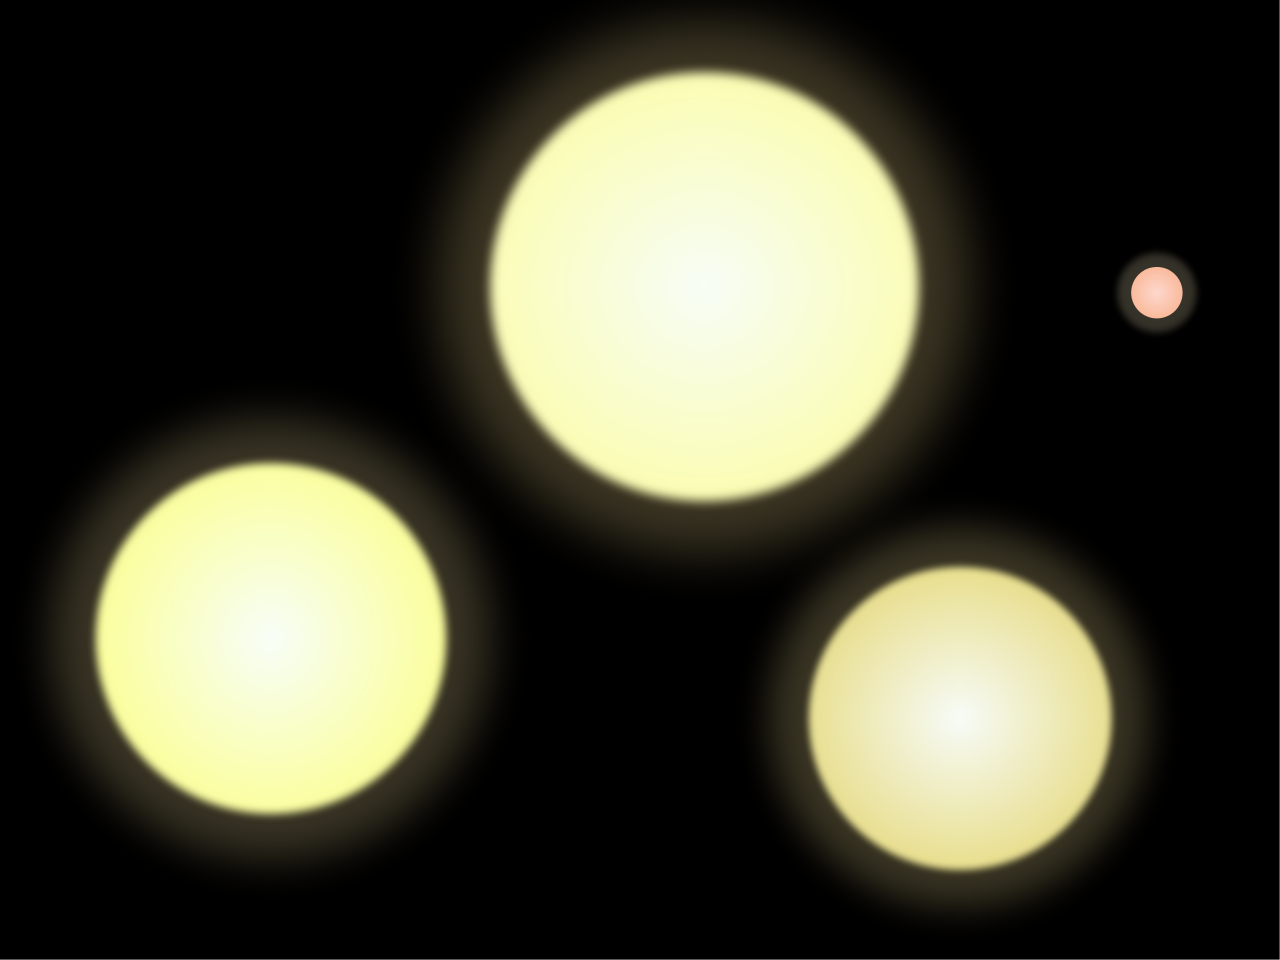 A Nap, az A és B Centauri, valamint a Proxima Centauri méretarányos összehasonlítása